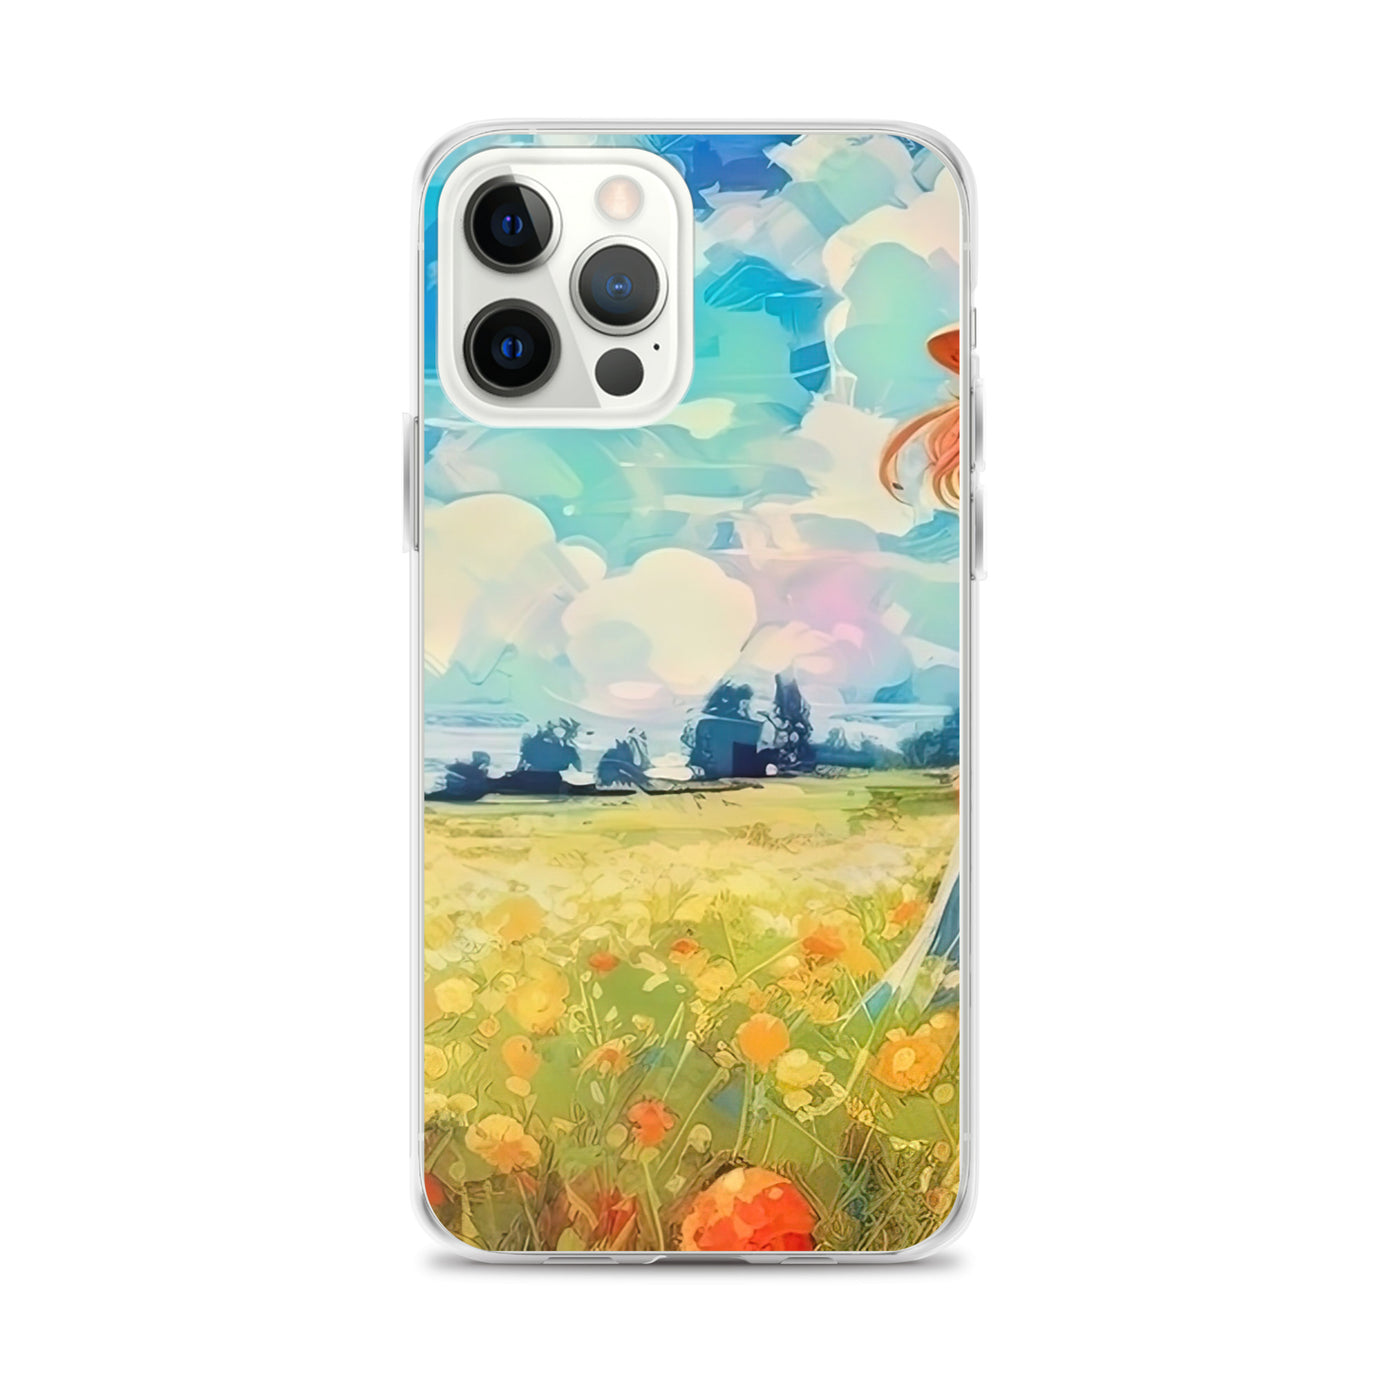 Dame mit Hut im Feld mit Blumen - Landschaftsmalerei - iPhone Schutzhülle (durchsichtig) camping xxx iPhone 12 Pro Max